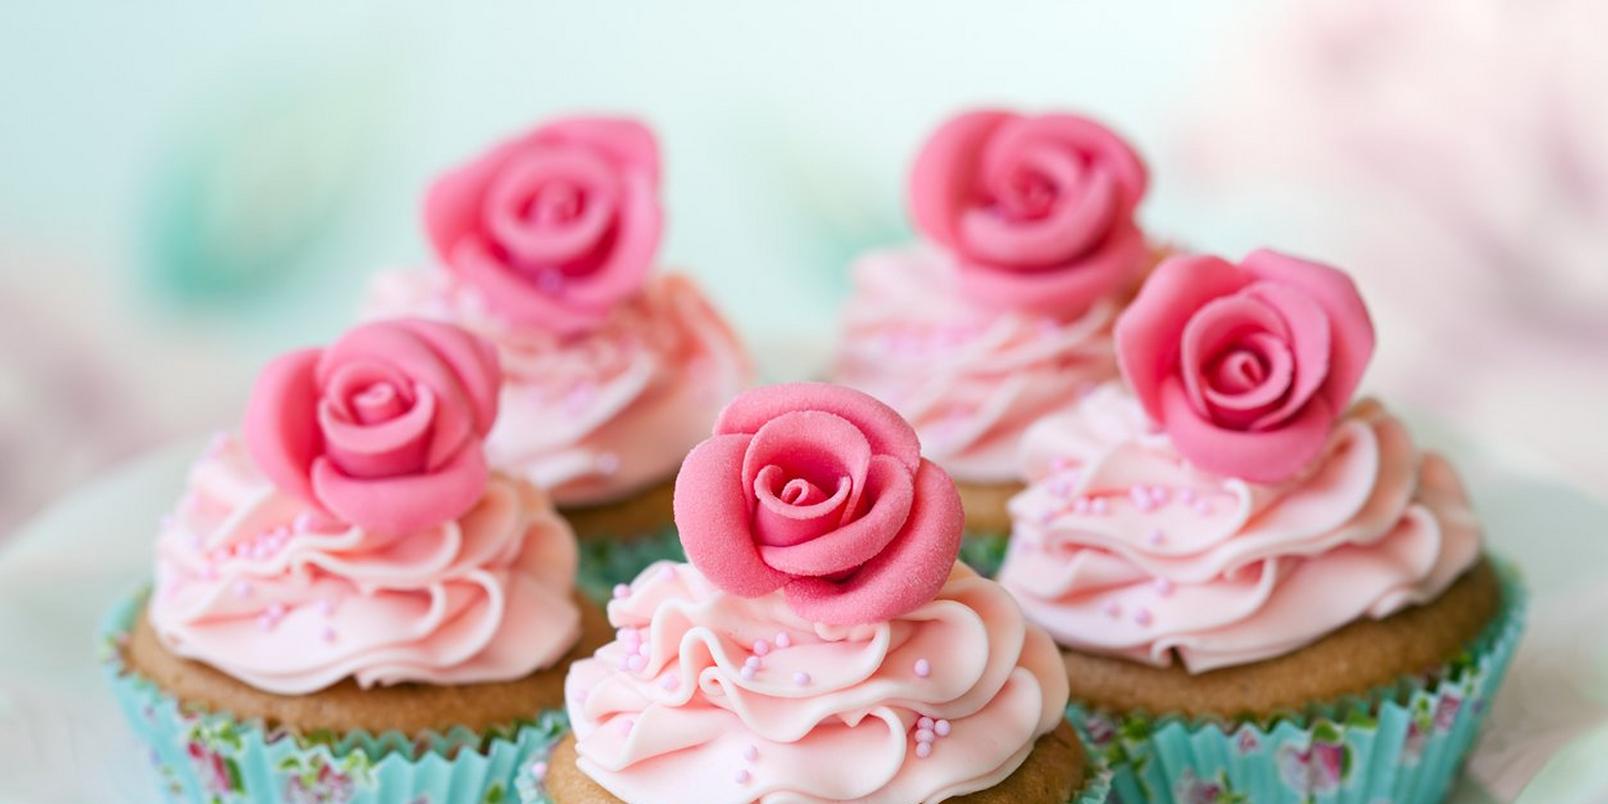 mini-fondant-roses-on-cupcakes